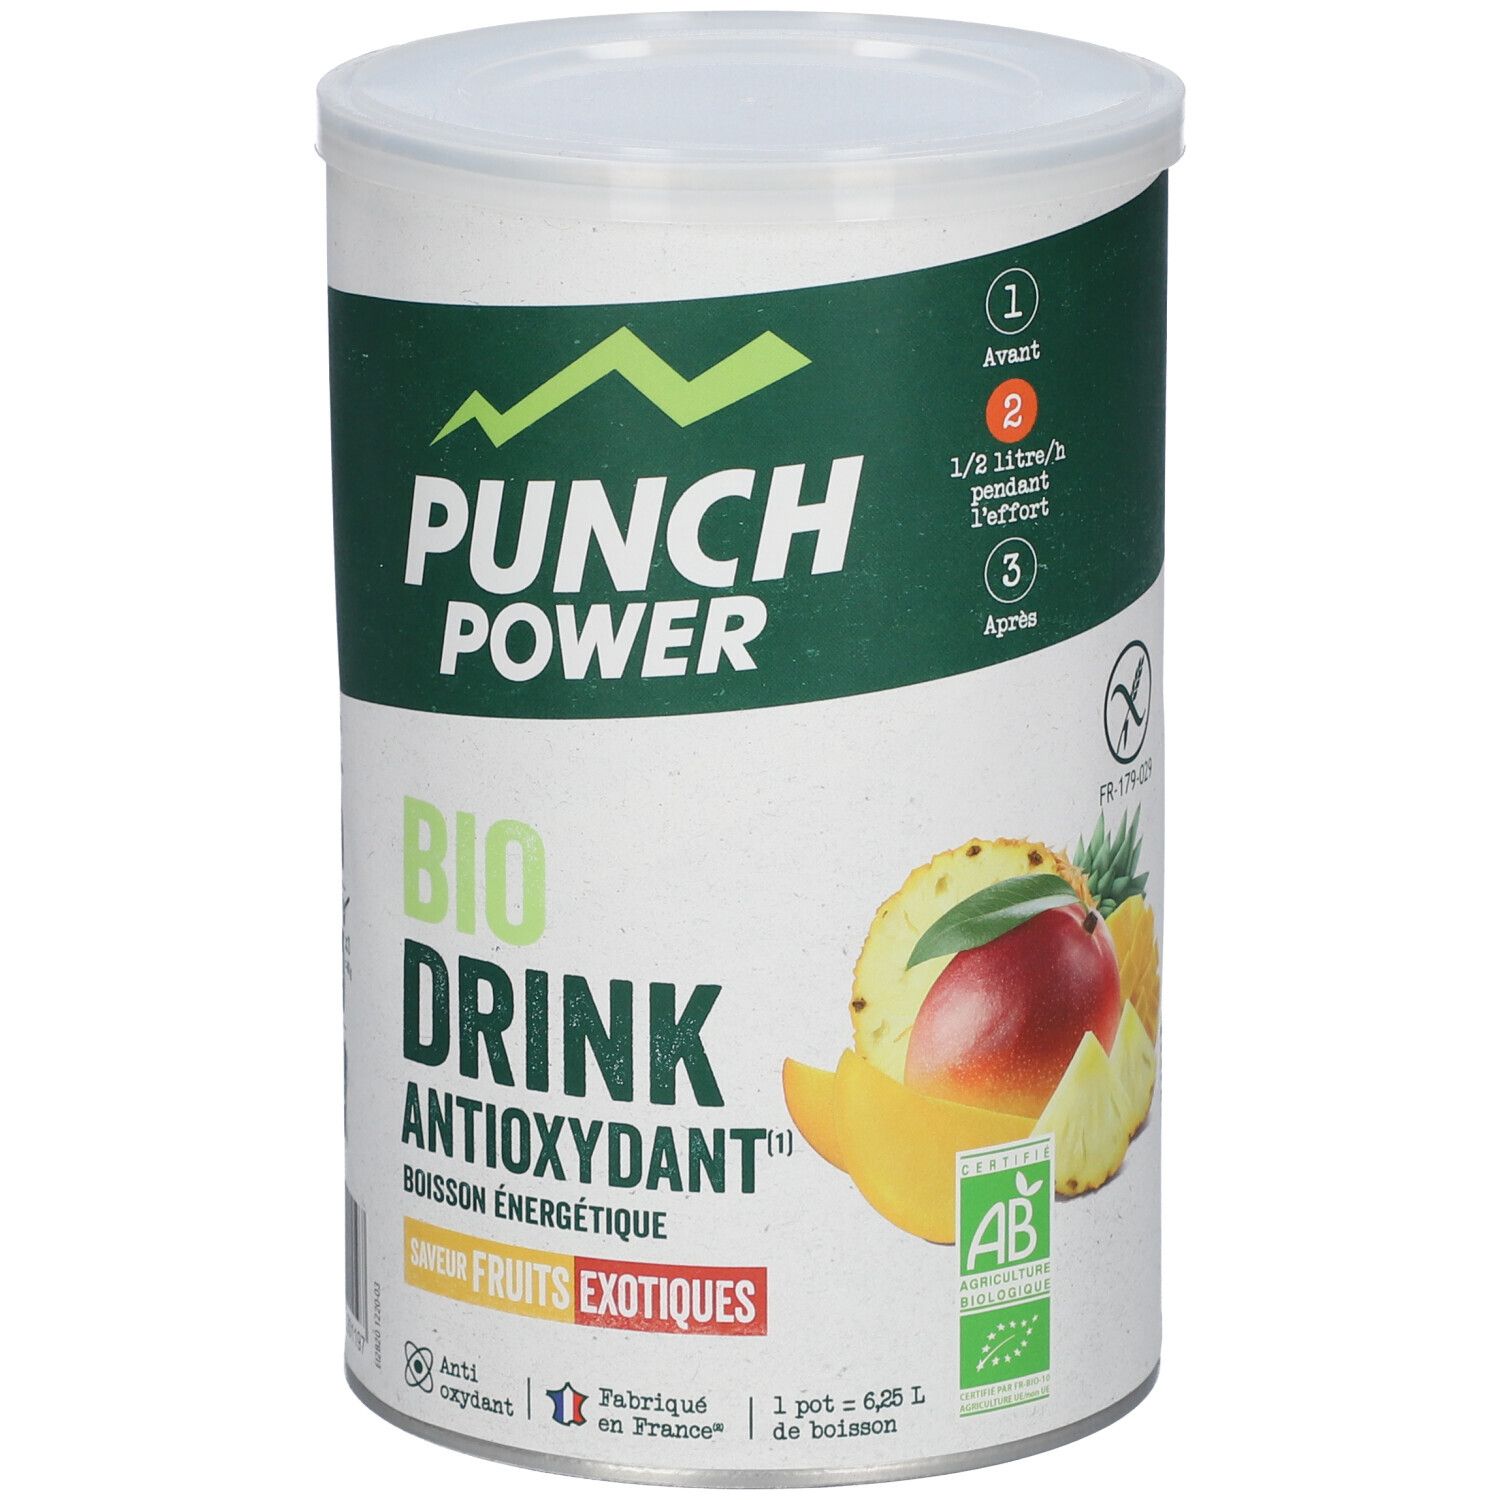 Punch Power Biodrink Boisson énergétique Fruits exotiques